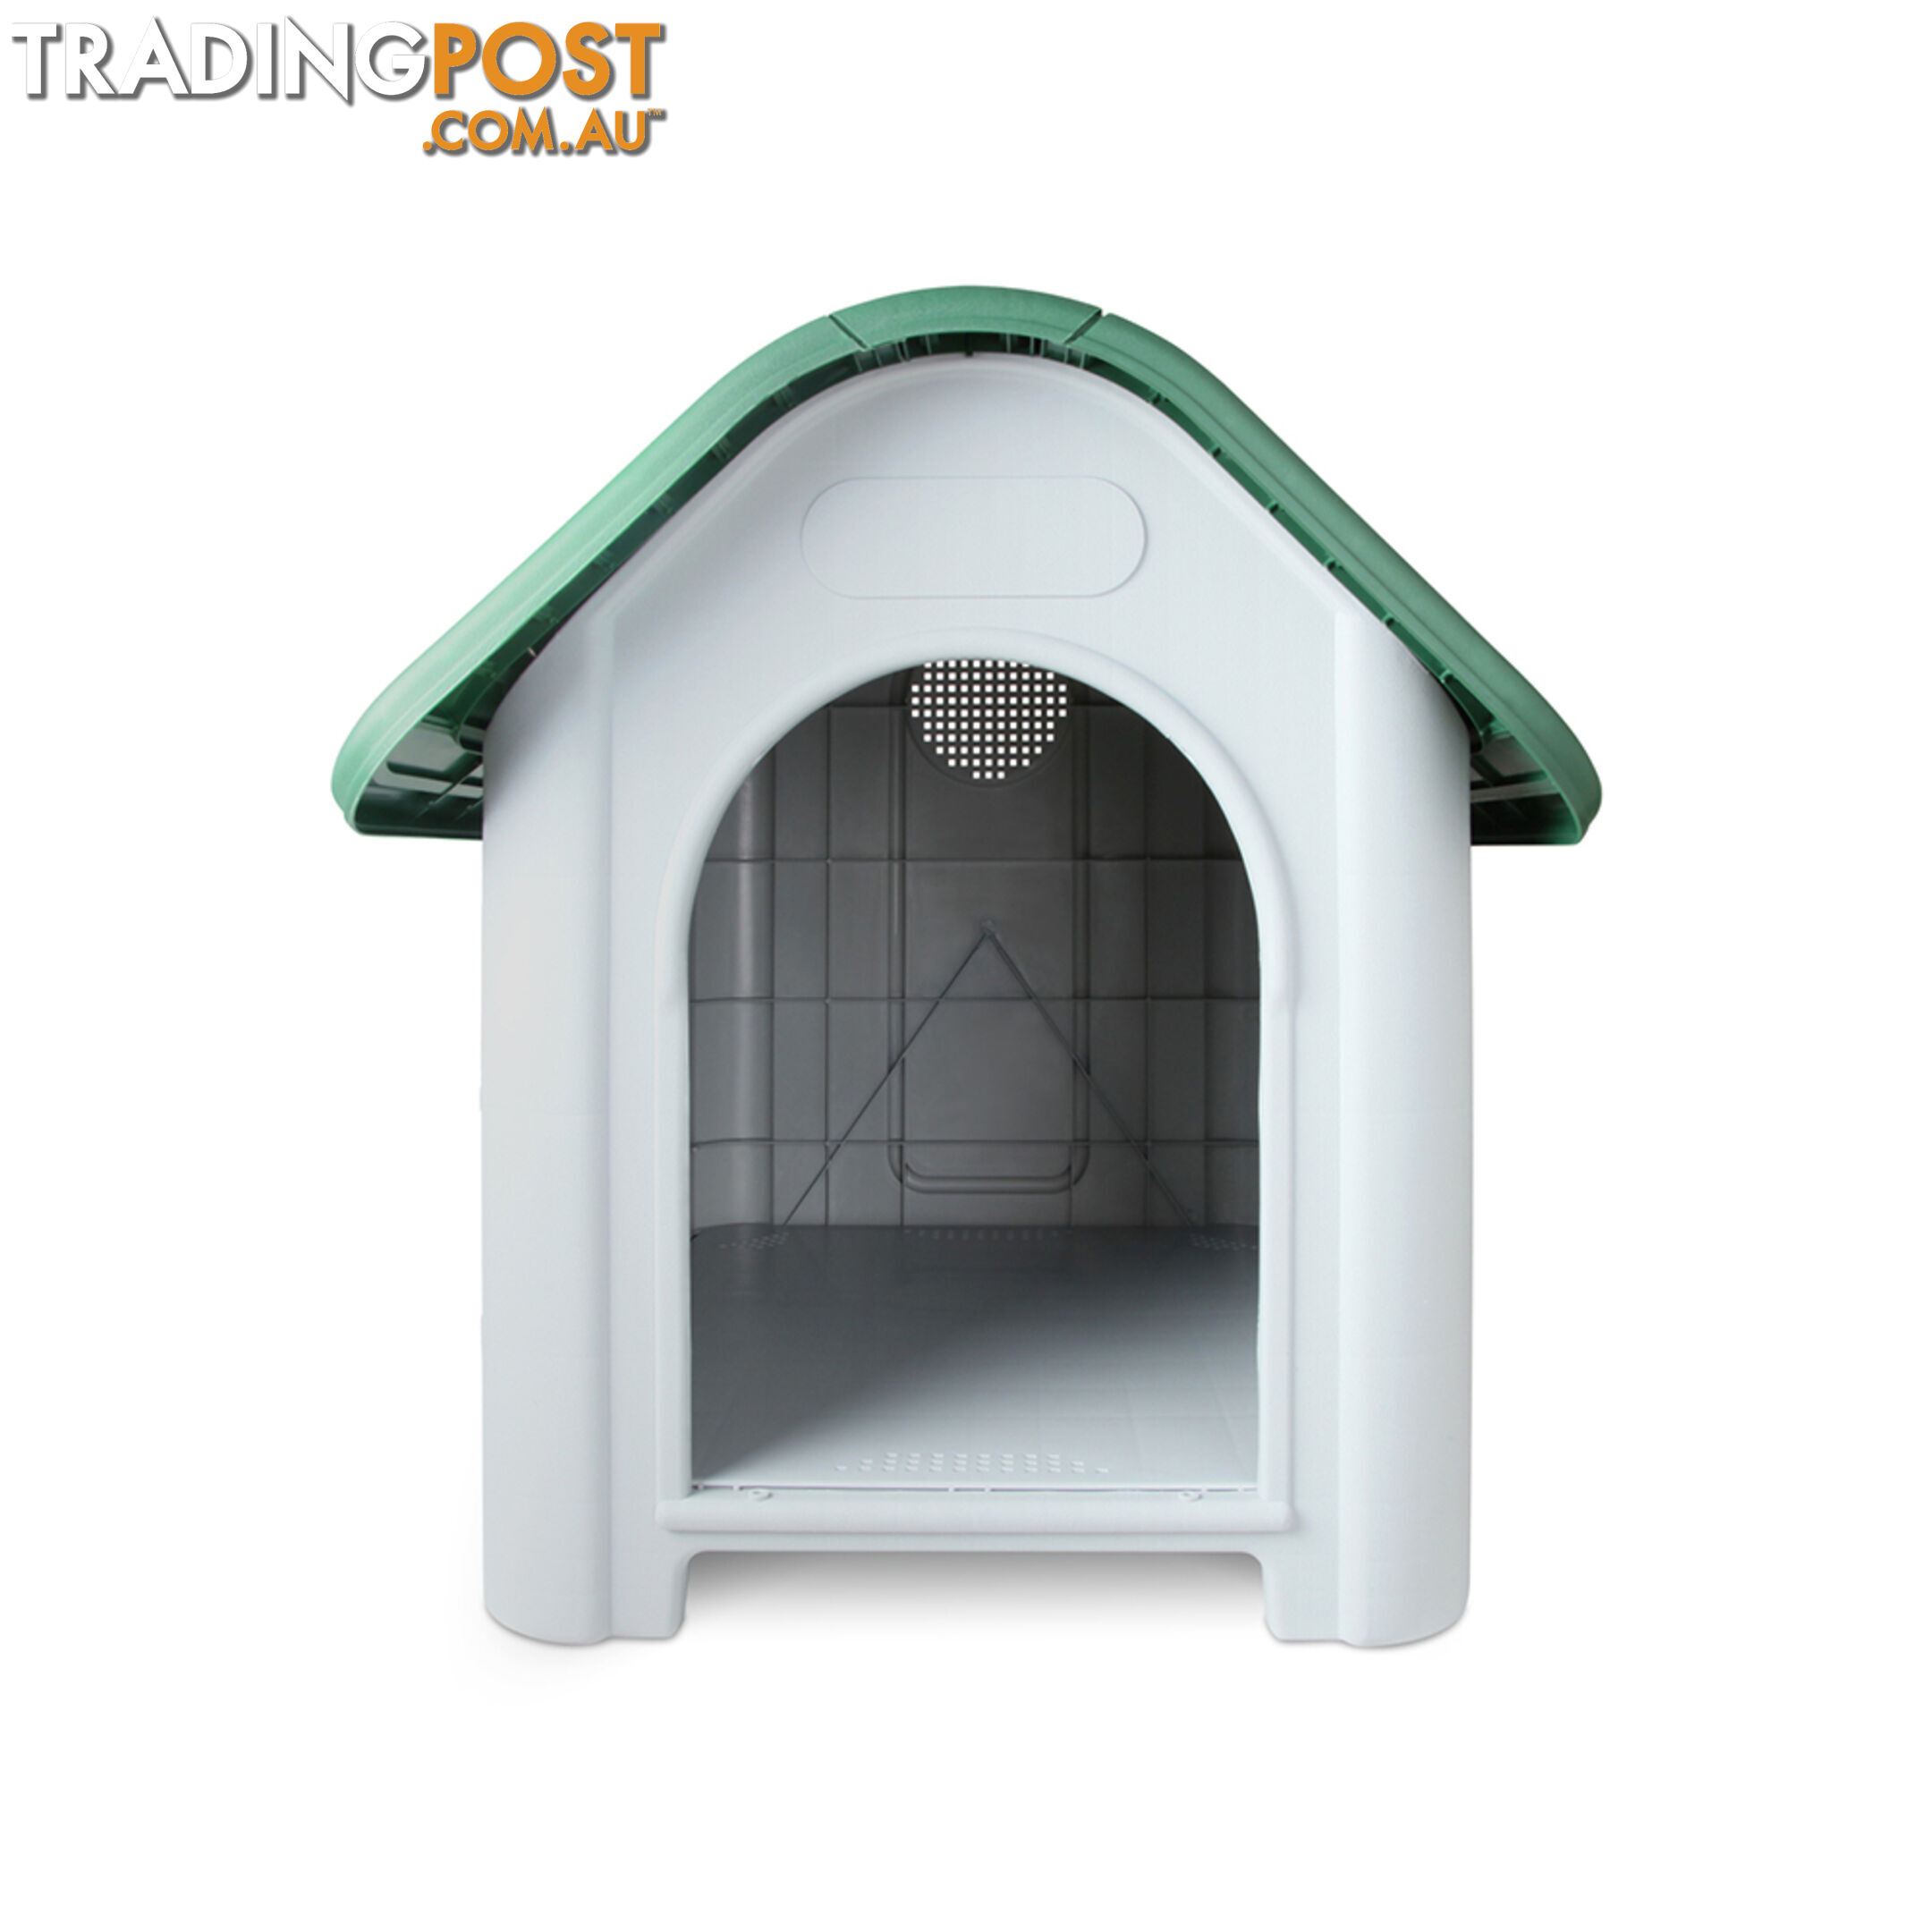 Large Weatherproof Plastic Dog Kennel Pet Puppy Outdoor Indoor Garden Dog House